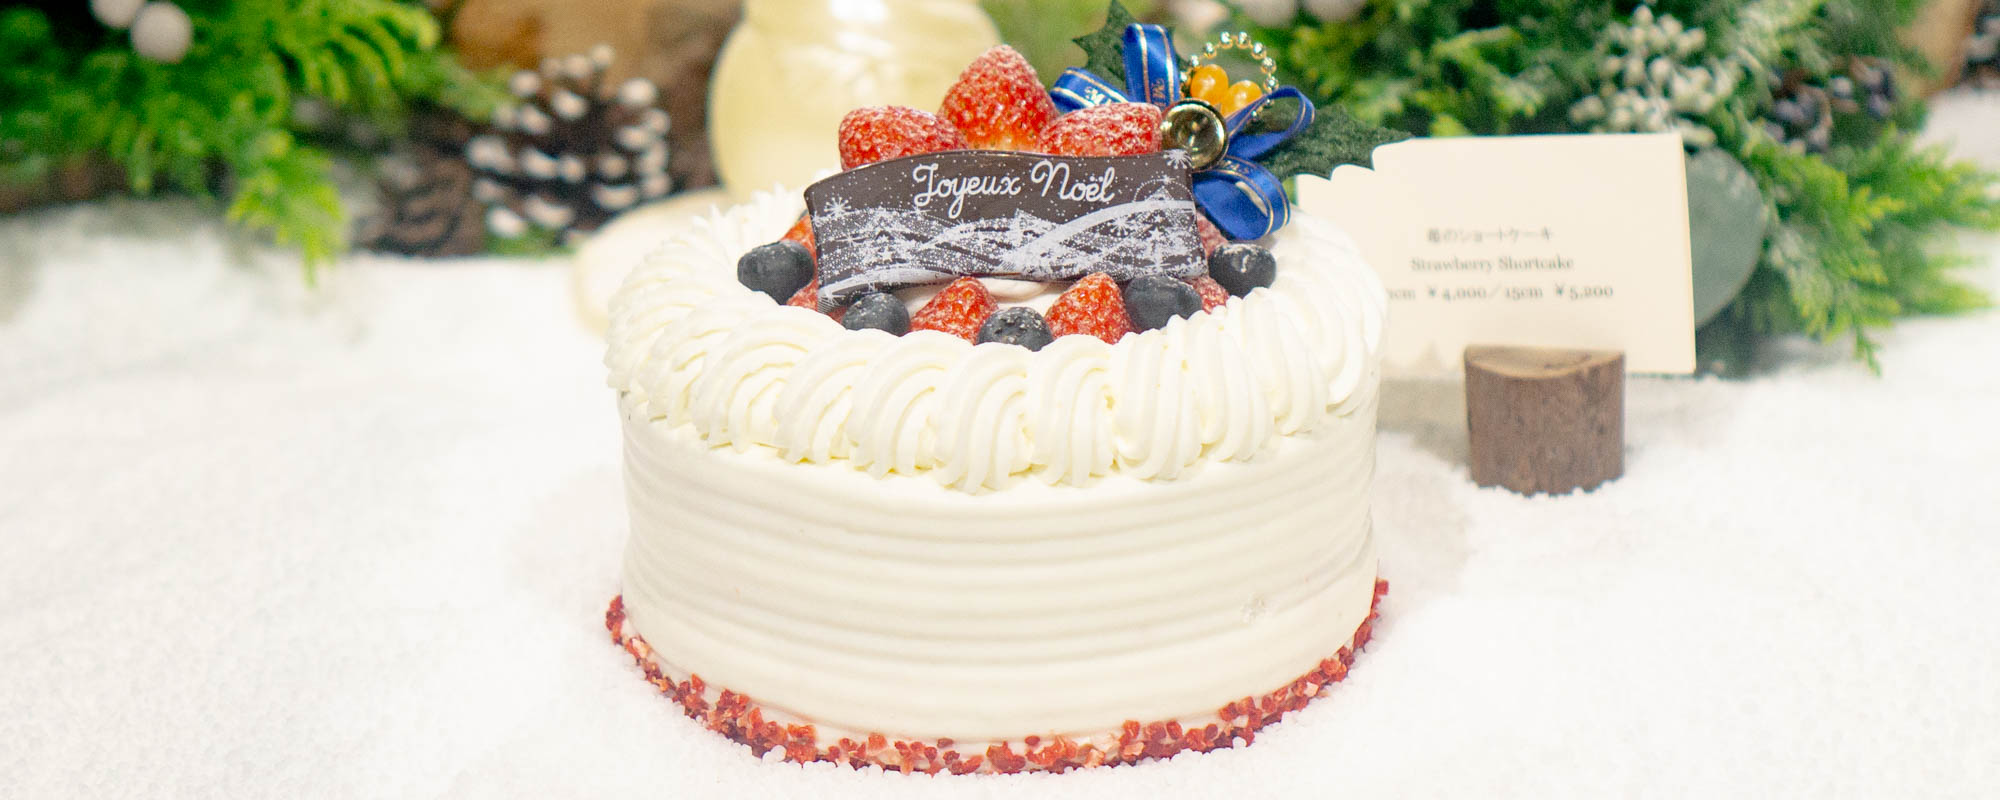 2018年の〈アンダーズ 東京〉は甘く美しい、5種類のクリスマスケーキ。